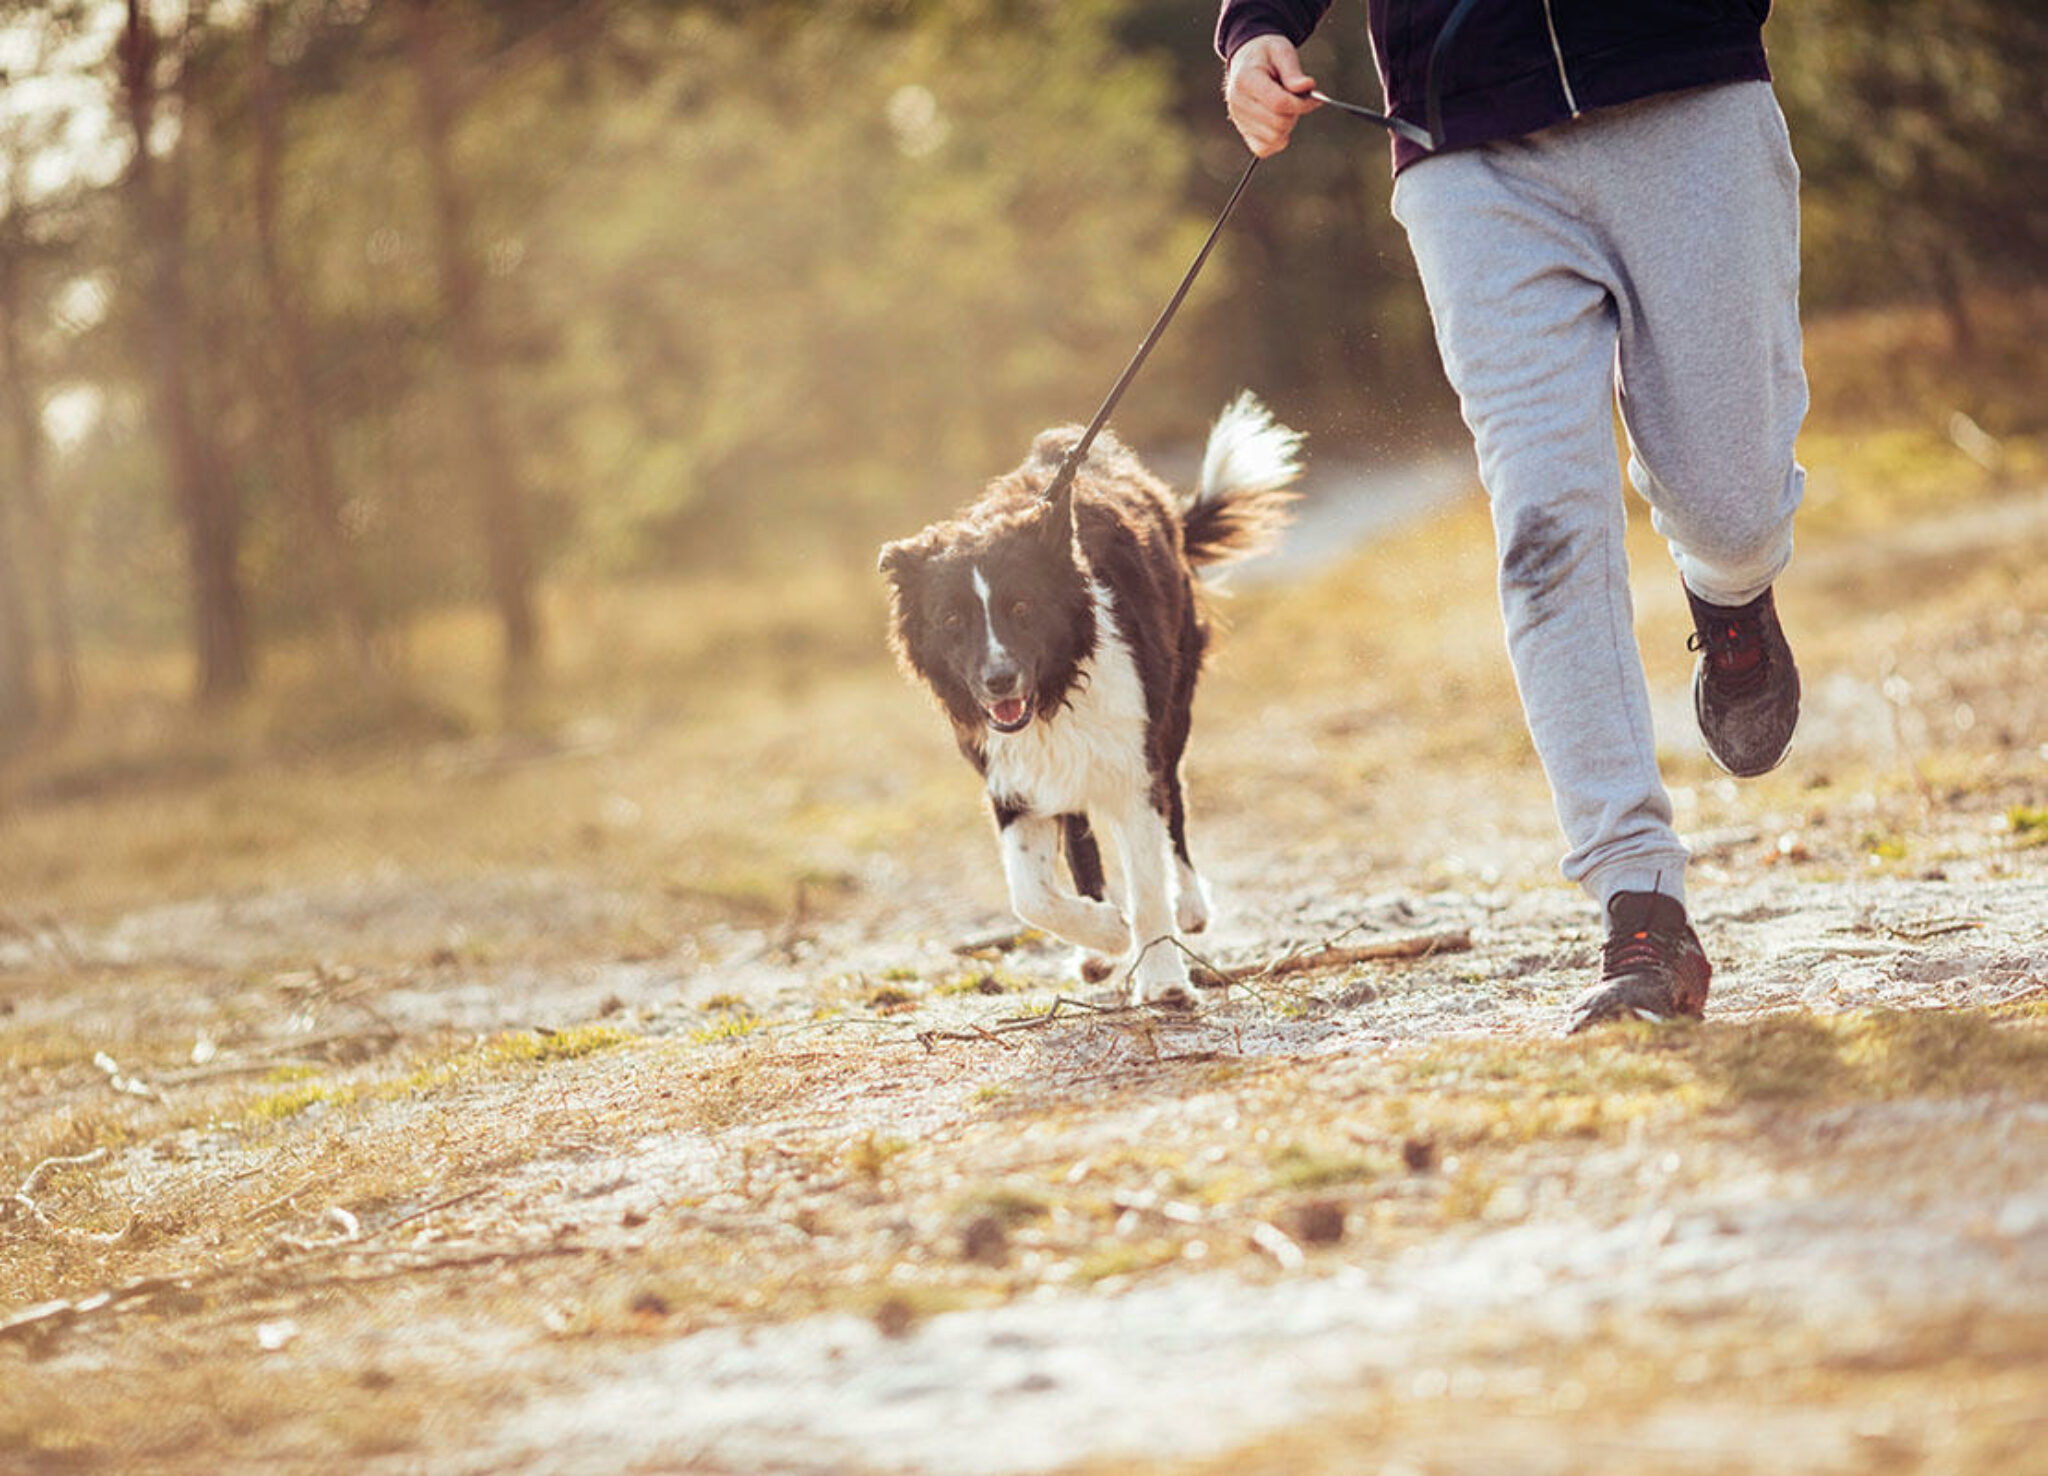 Come Insegnare Al Tuo Cane A Camminare Sul Tapis Roulant 9 Consigli Per Far Camminare Il Tuo Cane Su Un Tapis Roulant